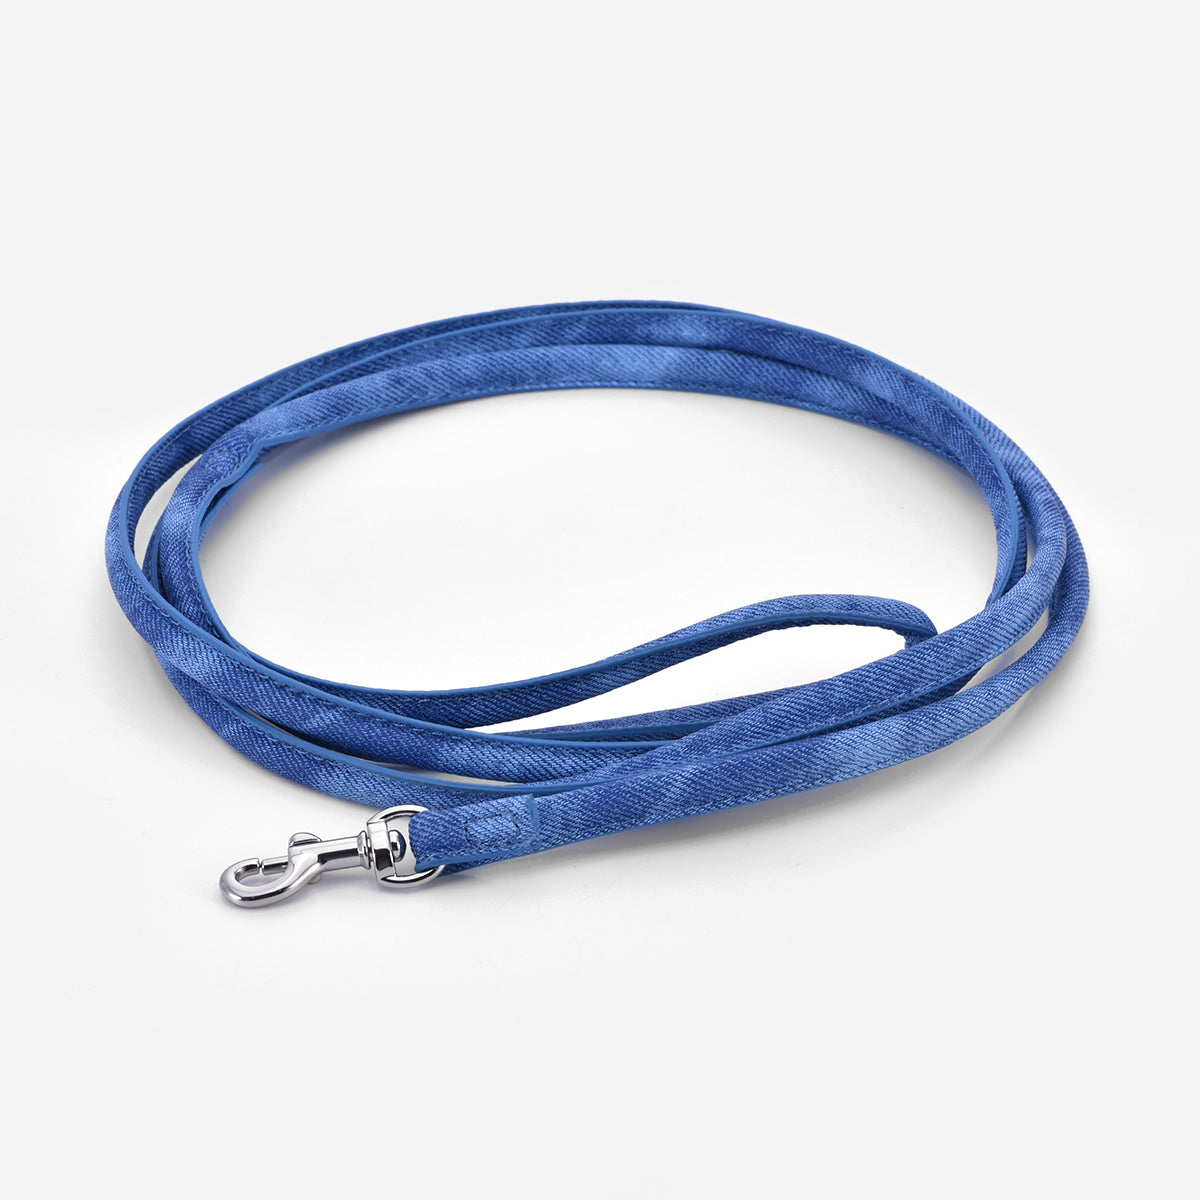 blue-denim-dog-leash-small.jpg